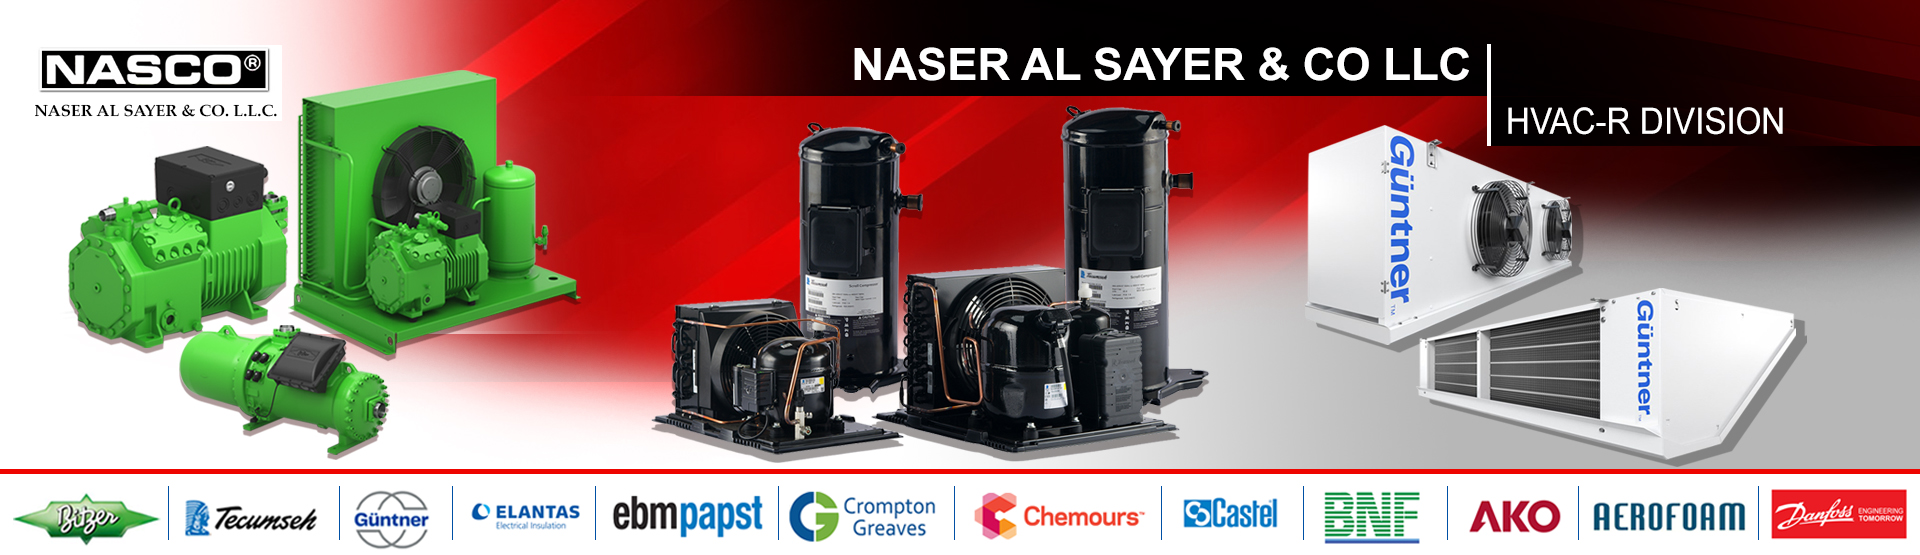 NASER AL SAYER & CO LLC HVAC-R DIVISION